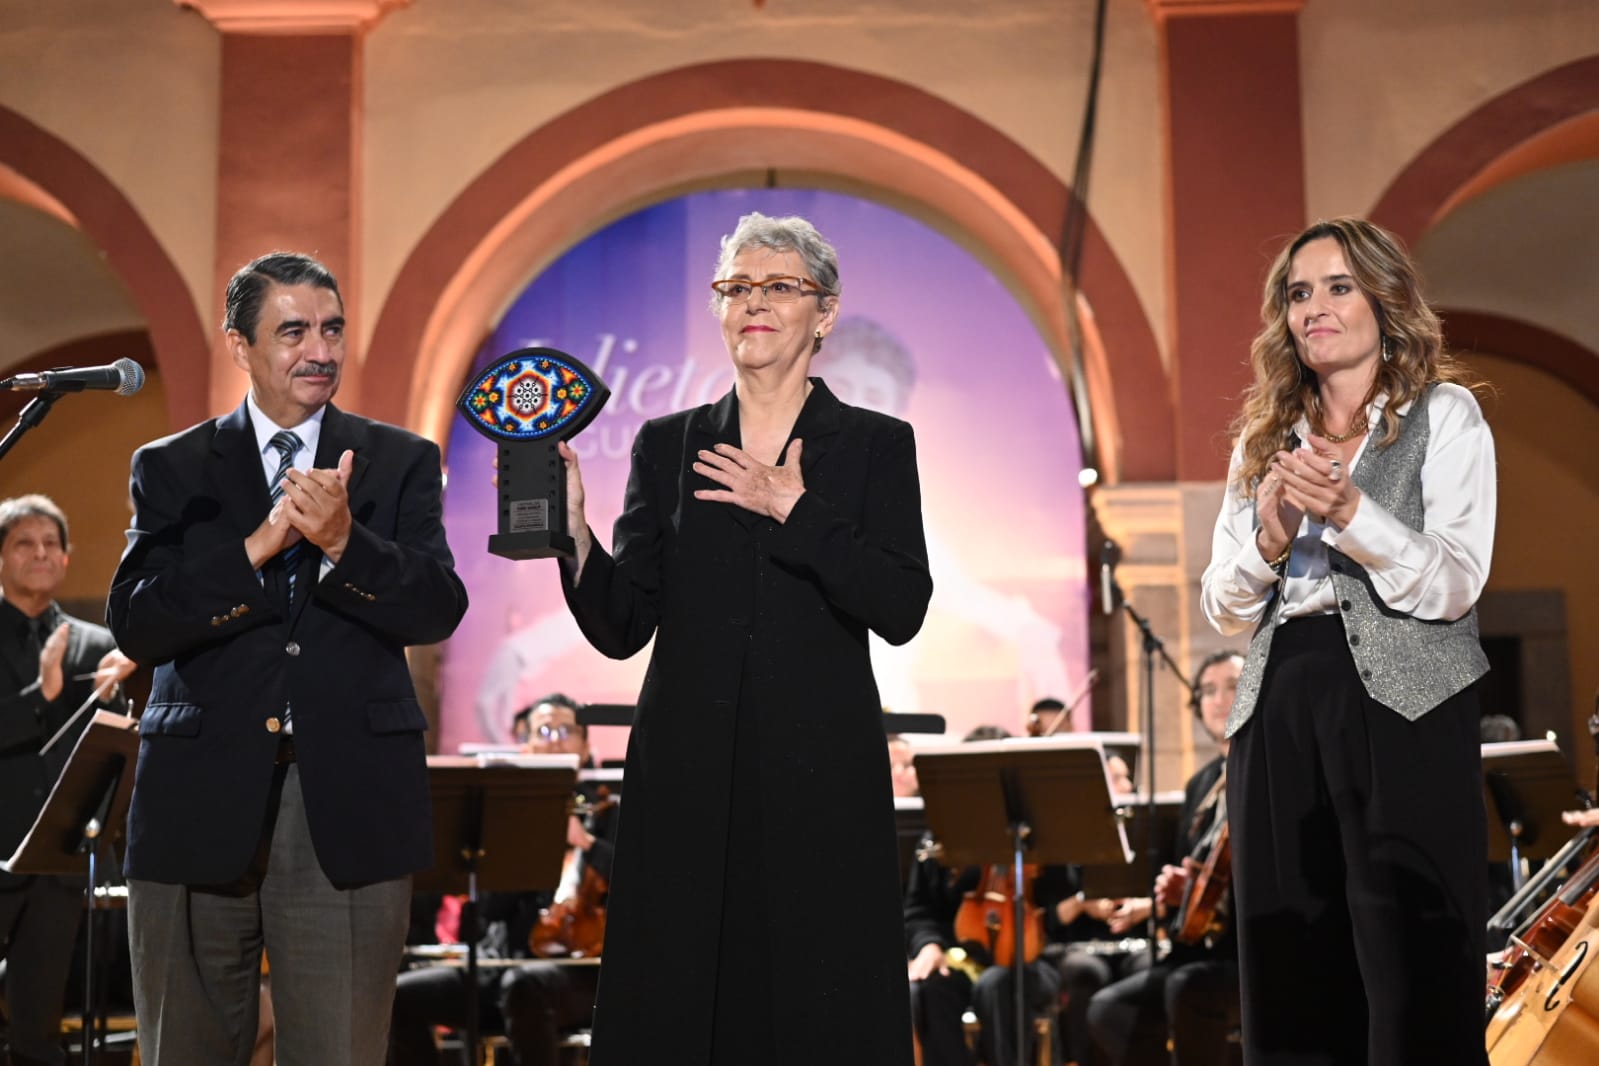 5to. Festival de Cine UALSP reconoció a Julieta Egurrola con “Premio Peyote” por 45 años de trayectoria artística